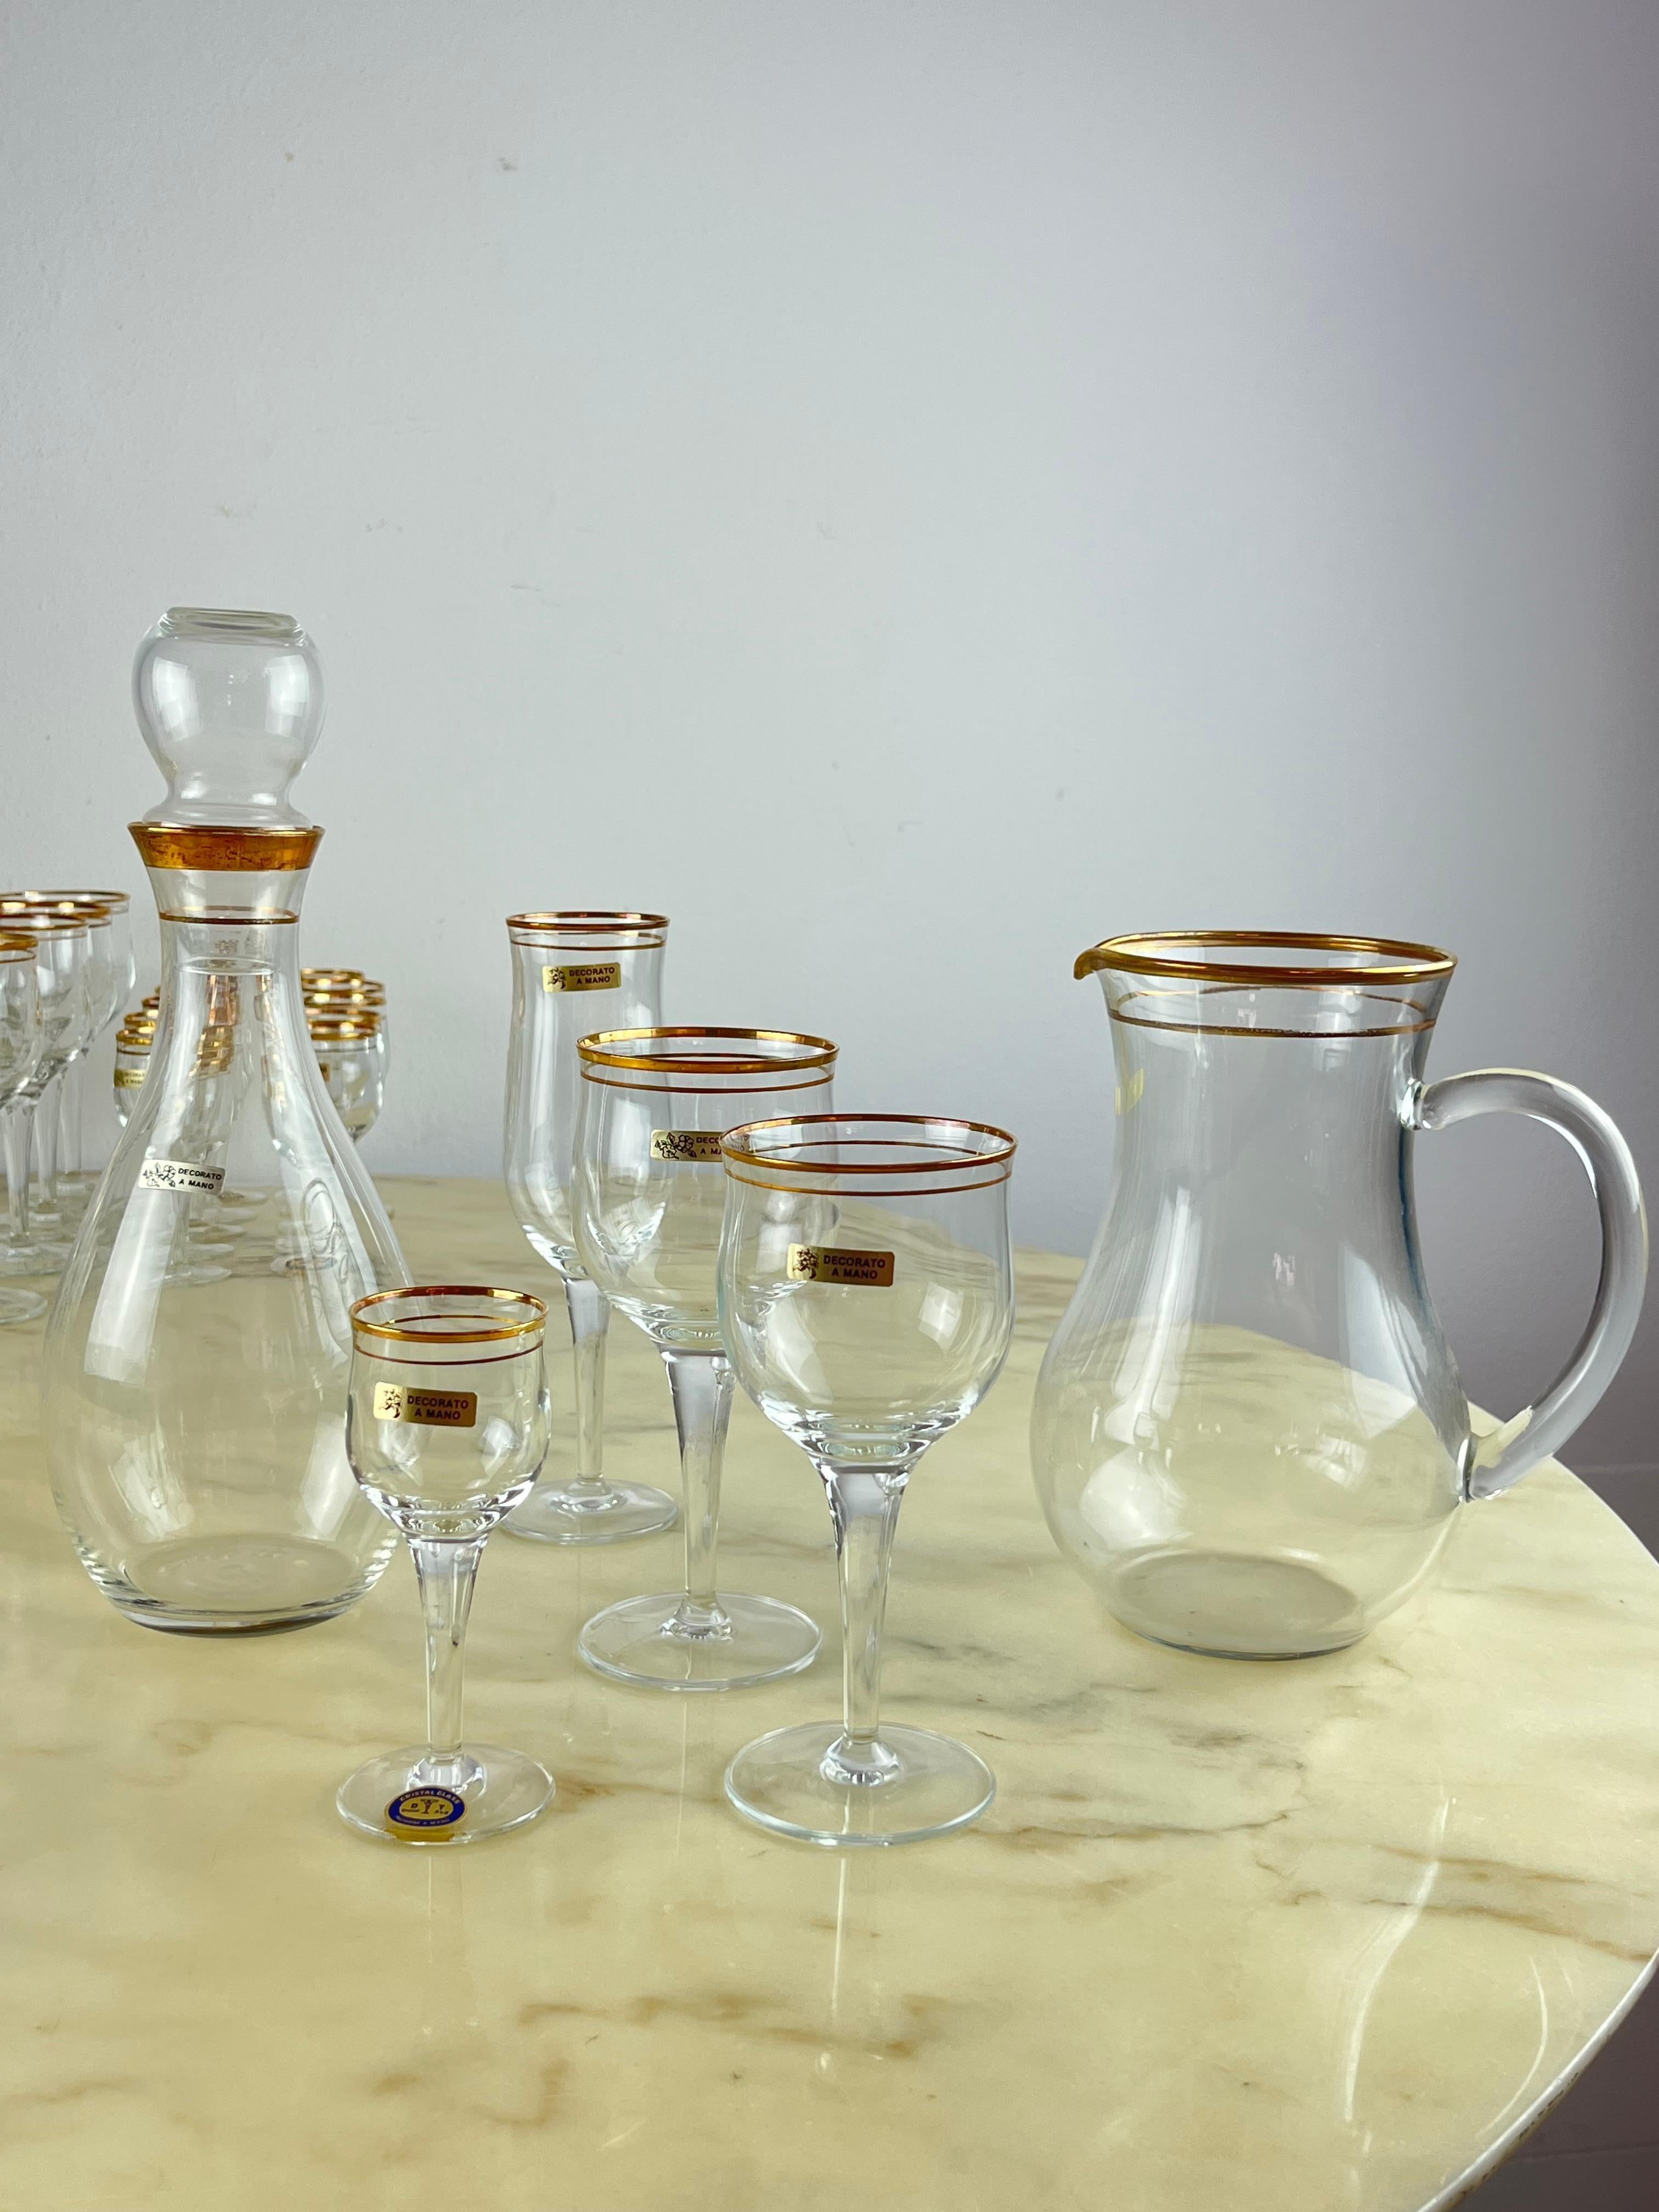 Ensemble de verres en cristal décorés à la main, Italie, années 1950, 48 pièces
Retrouvée dans un appartement noble, elle est composée de 12 verres à eau (17 cm de haut x c, 7 de diamètre), 12 verres à vin (16 cm de haut x 7 cm de diamètre), 11